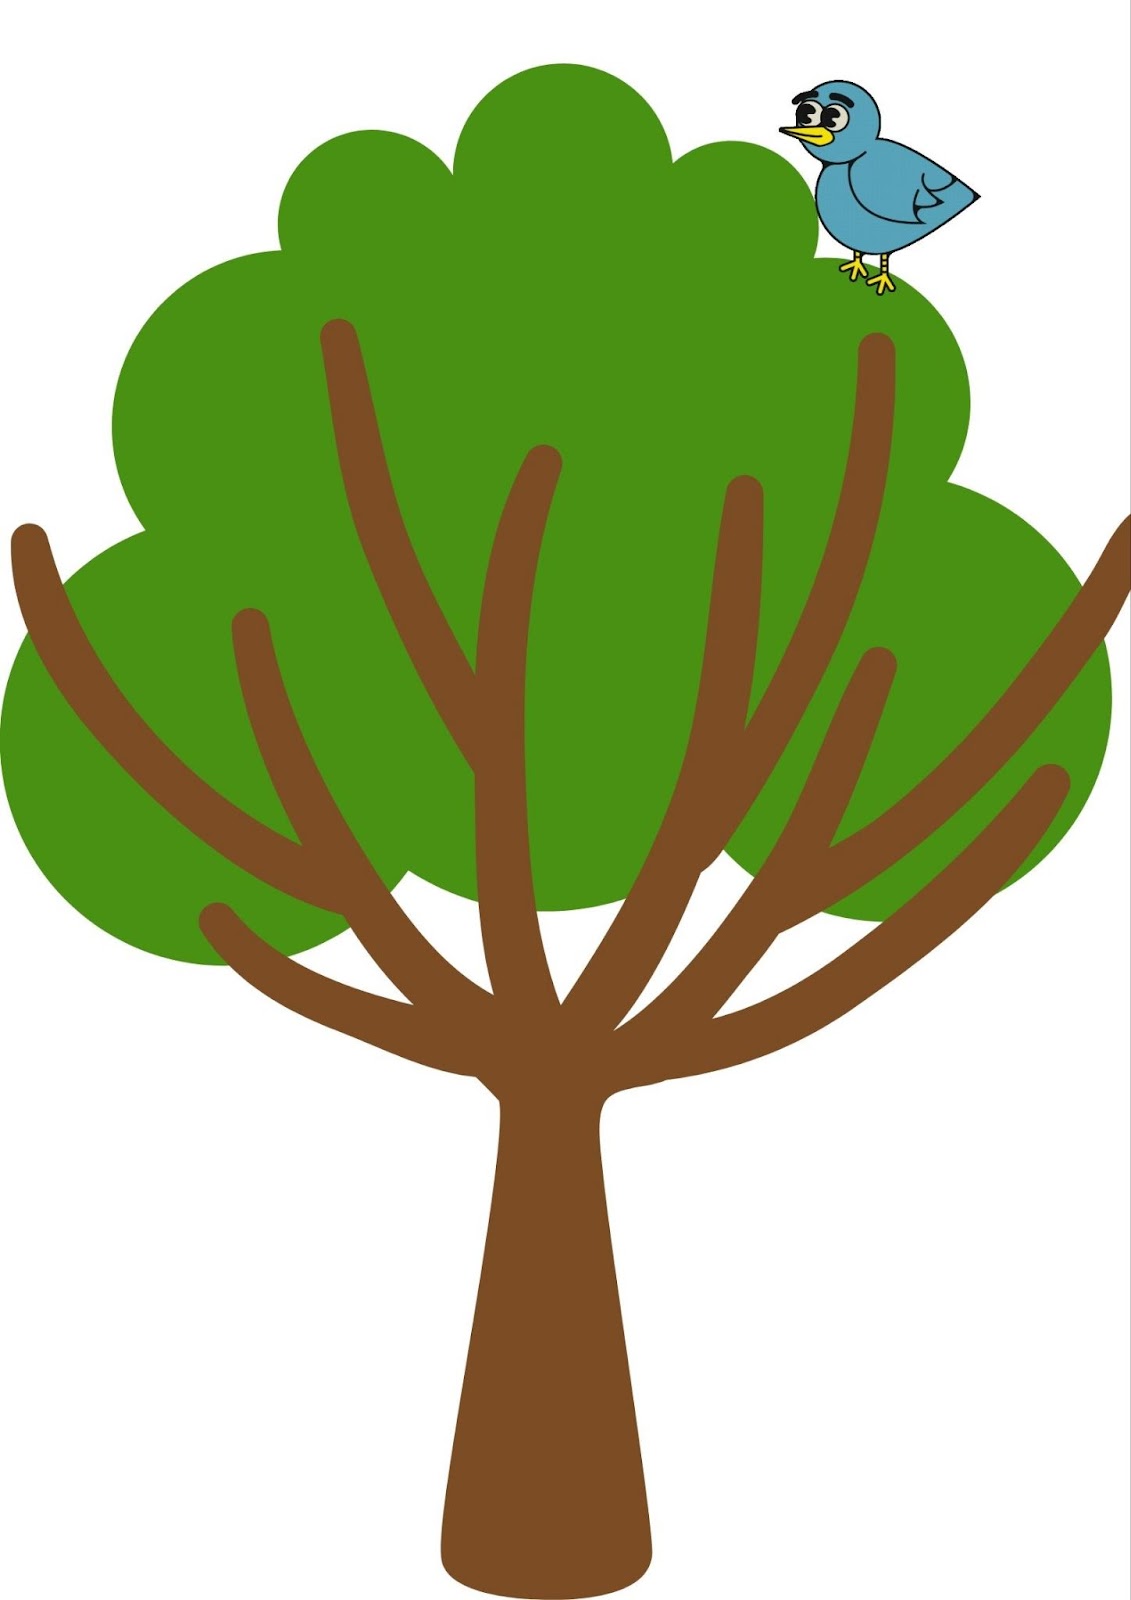 La imagen muestra un árbol con un pájaro encima.